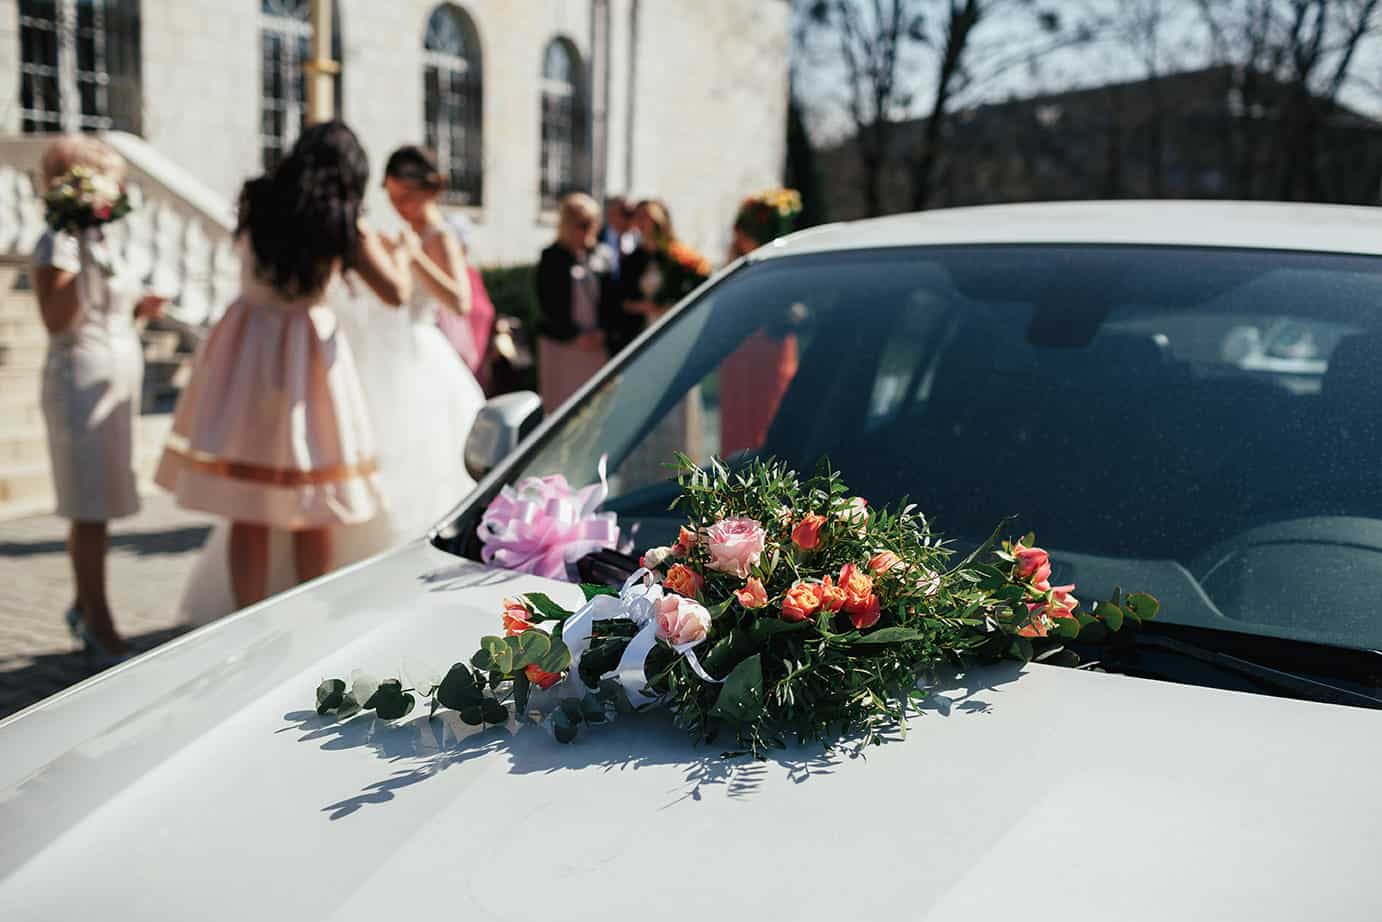 La tradition du cortège véhiculé lors d’un mariage est-elle en accord avec le code de la route ?